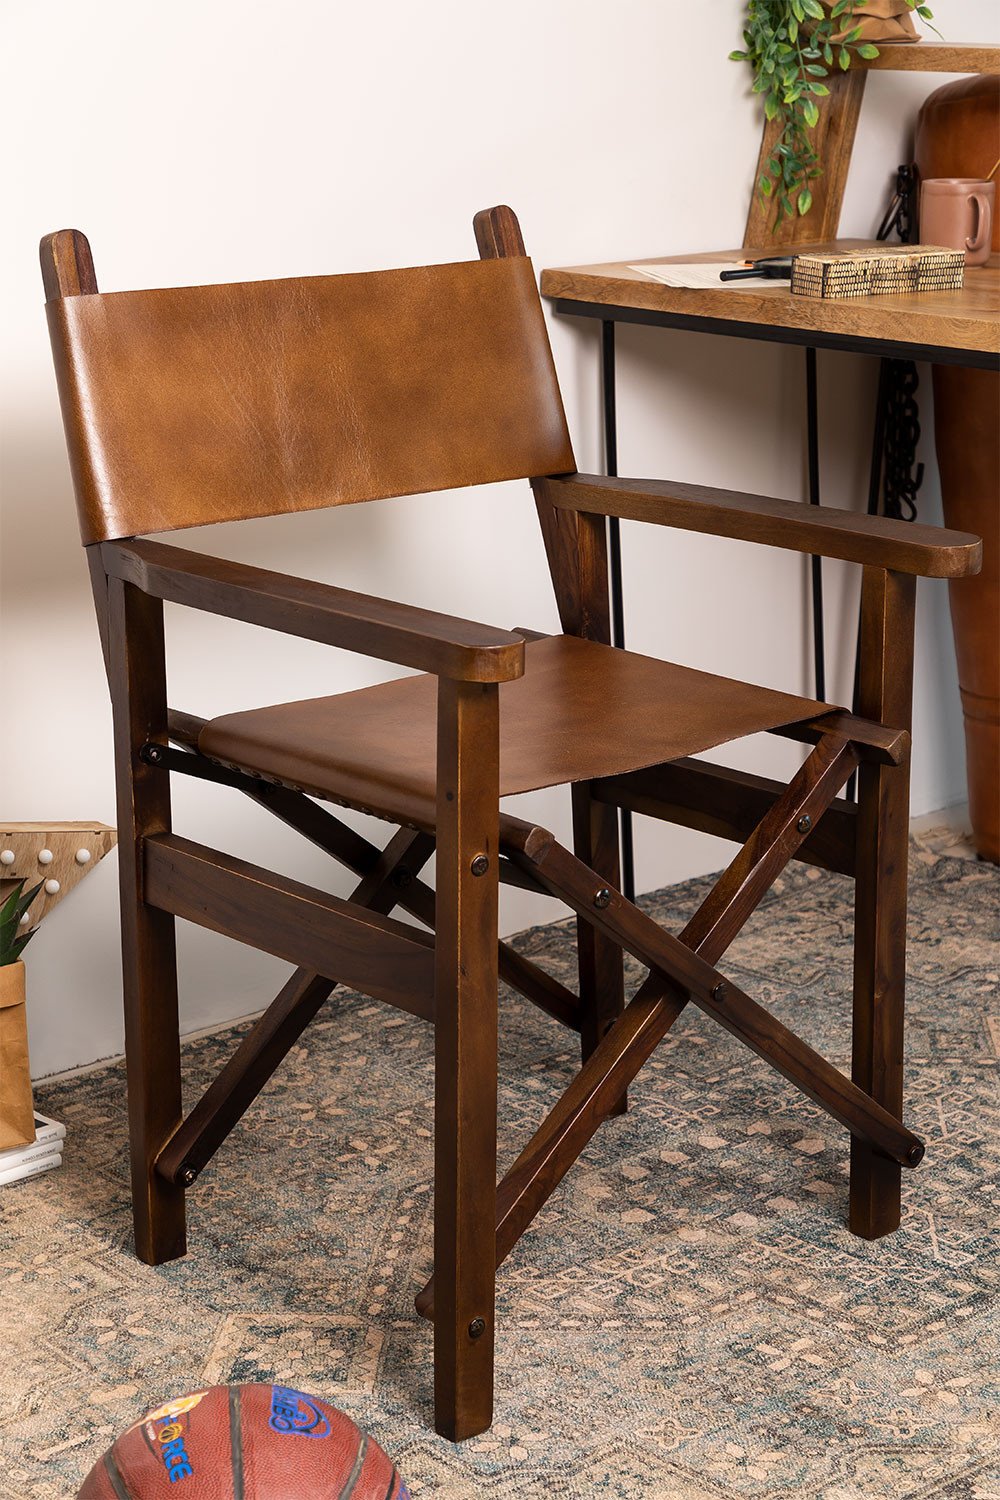 Skórzane skladane krzeslo rezyserskie Madeo, obrazek w galerii 1